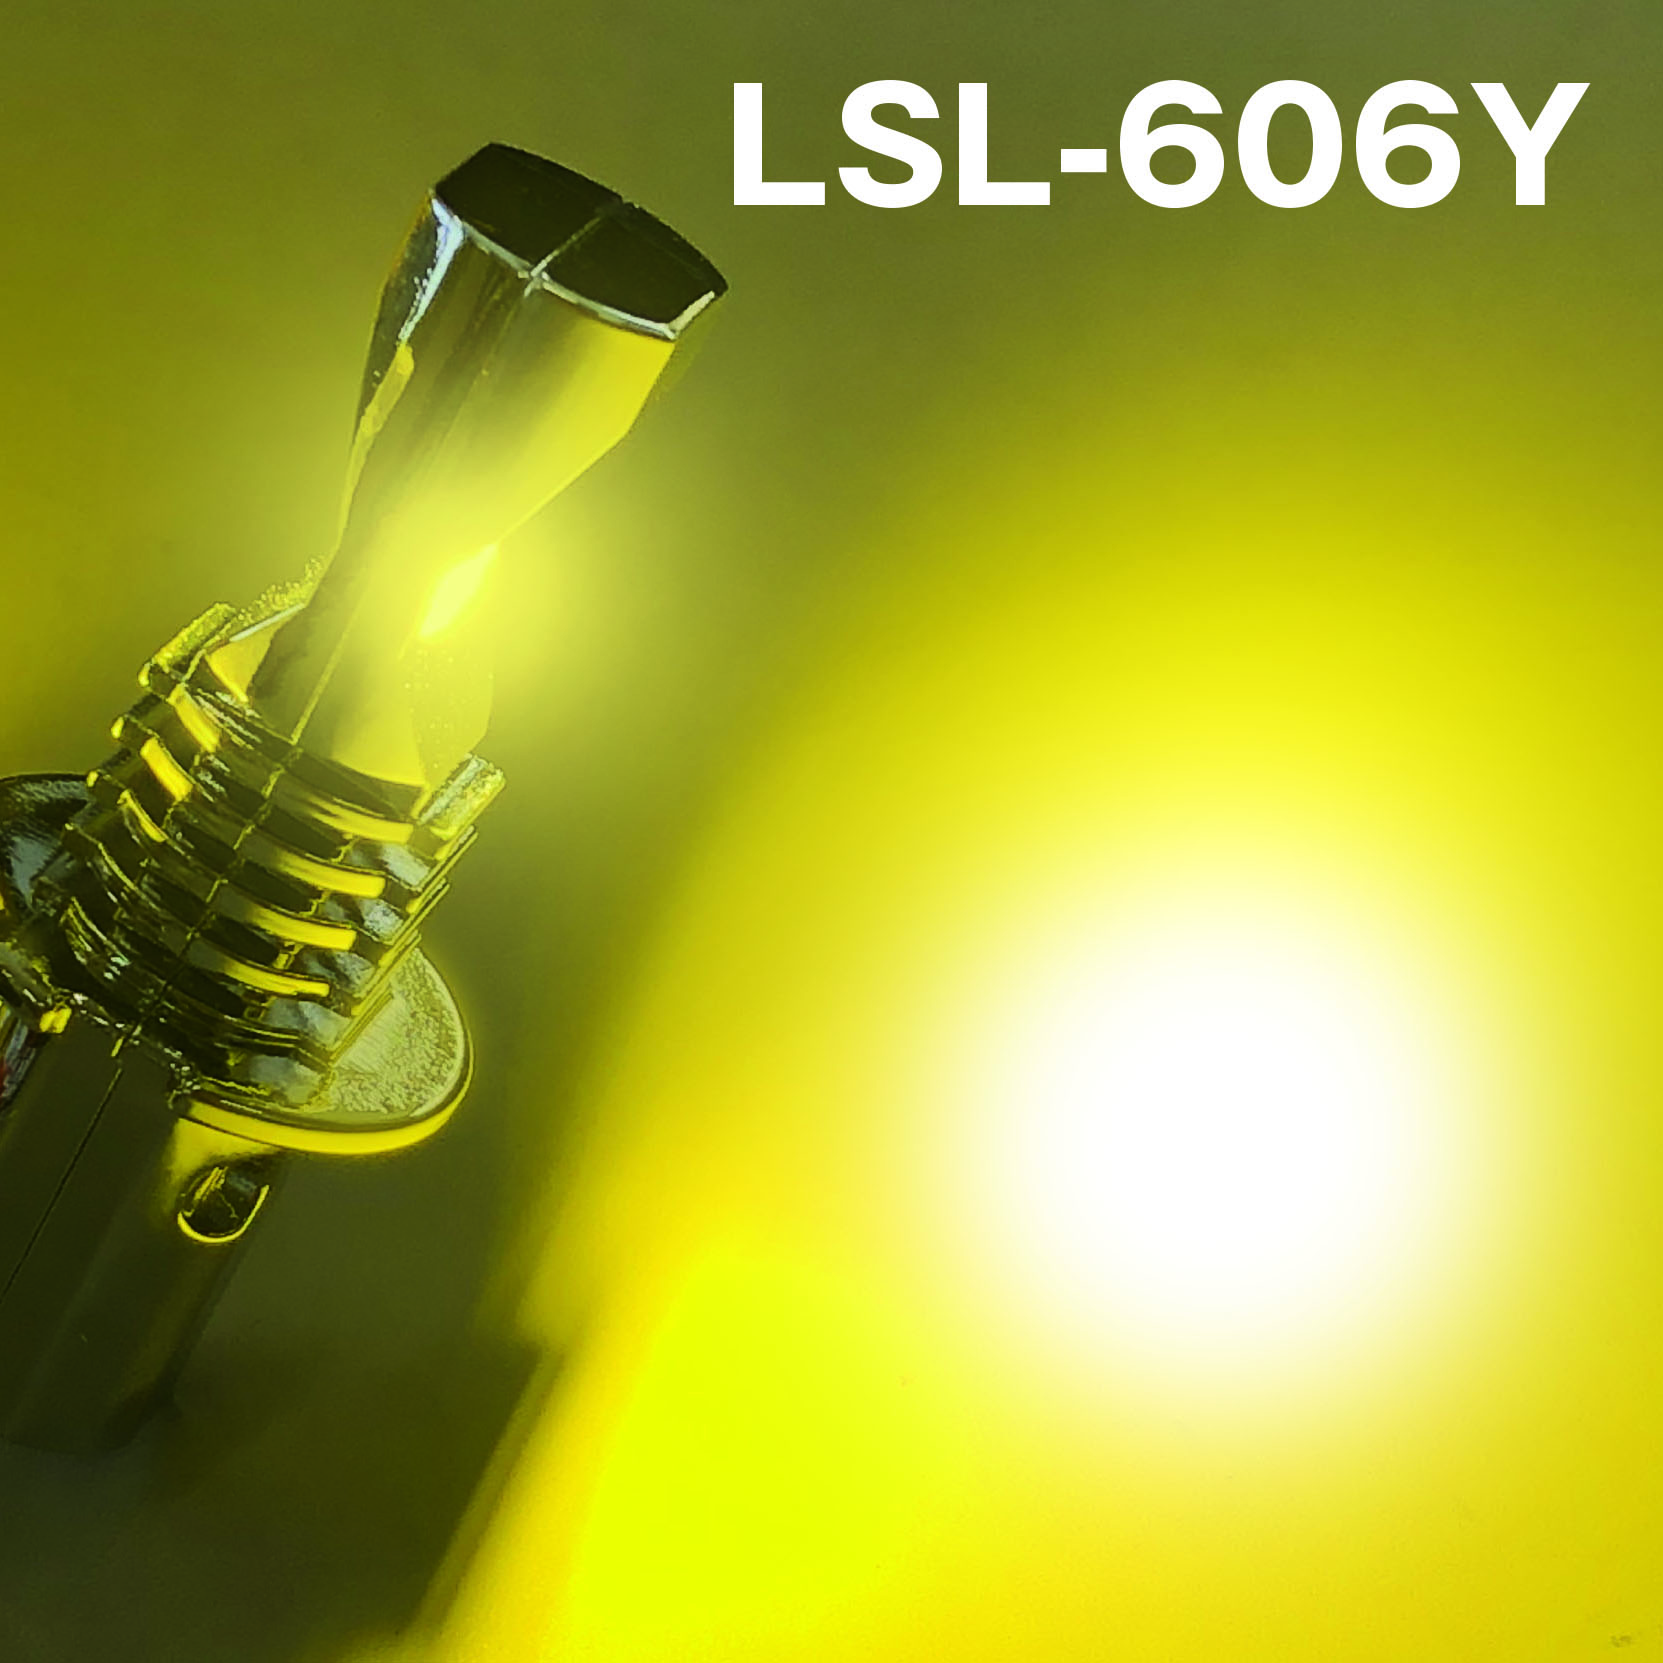 激光 LED H3バルブ イエロー R/Lセット 12V/24V共用 LSL-606Y 車検対応 色温度2600K・光束1300lm